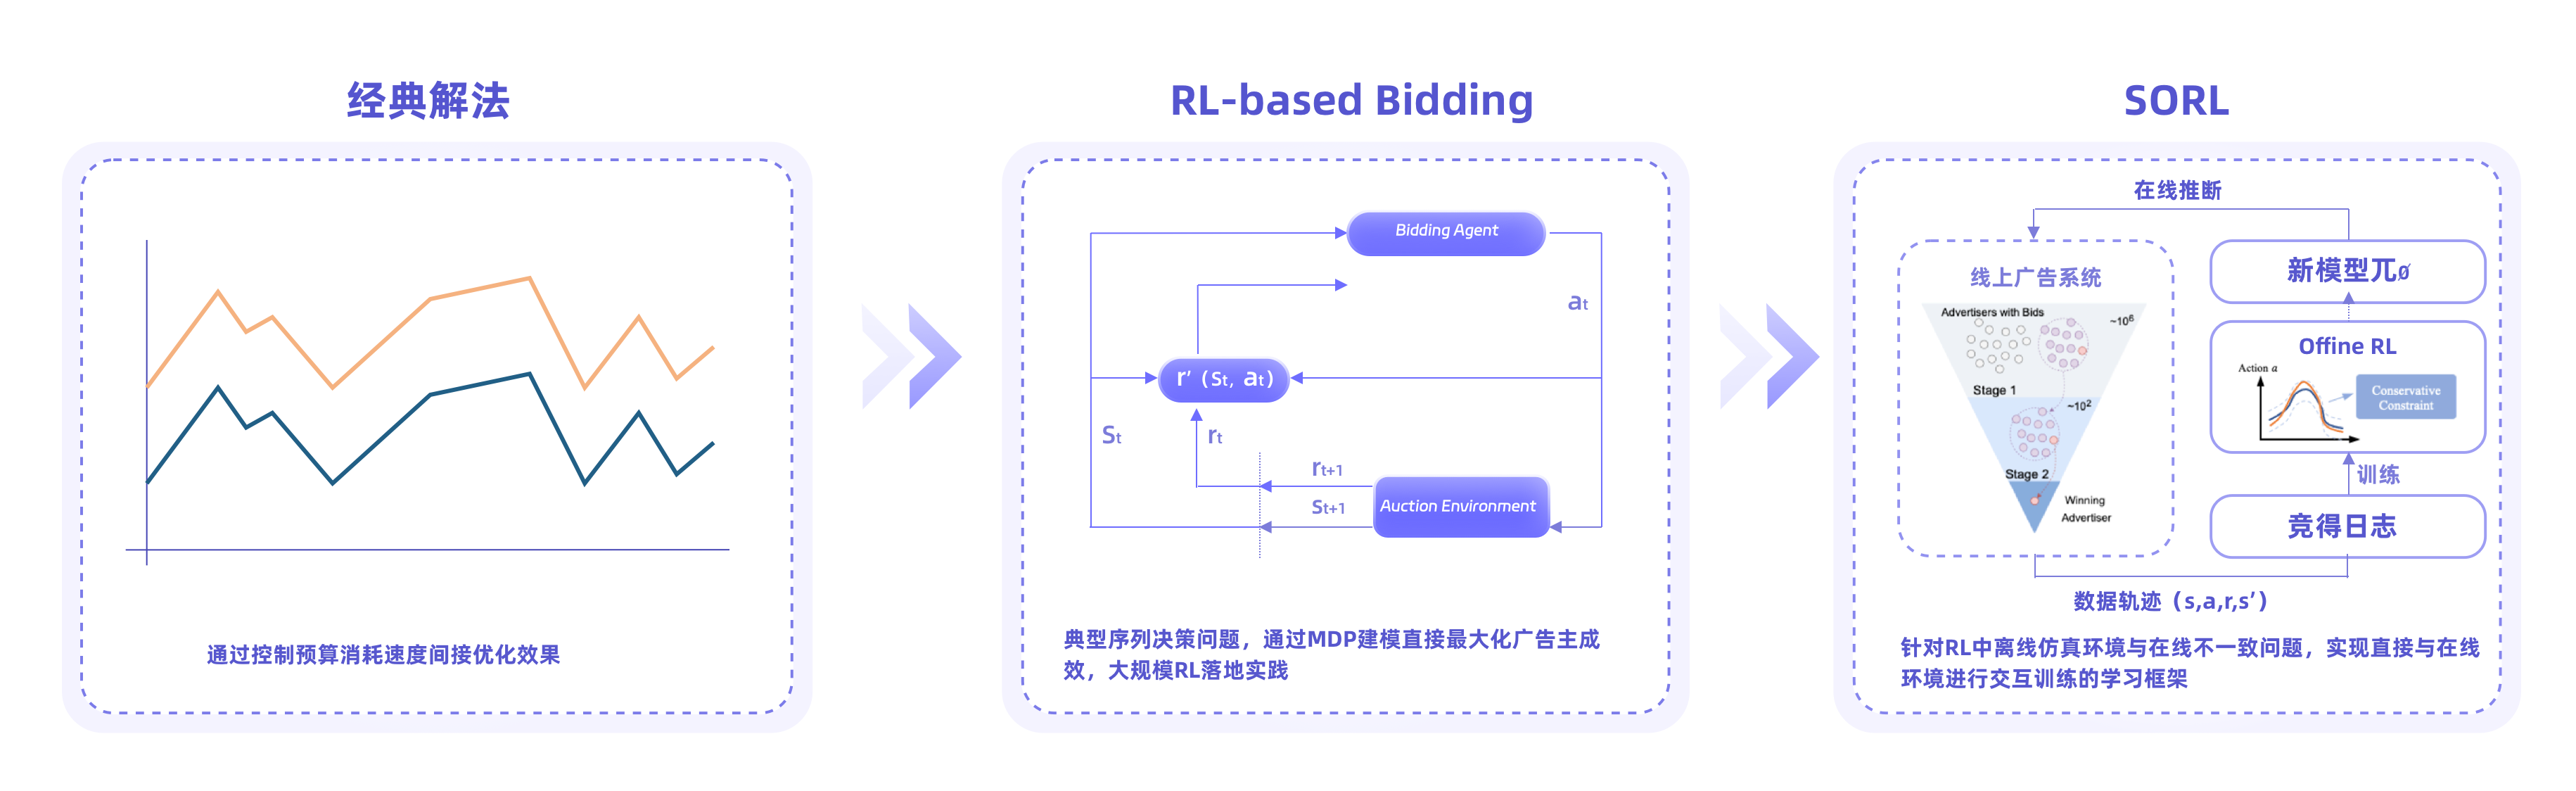 图2：典型的自动出价技术演进路线，从预算消耗控制->RL-based Bidding->SORL，下一步代际性升级是什么？